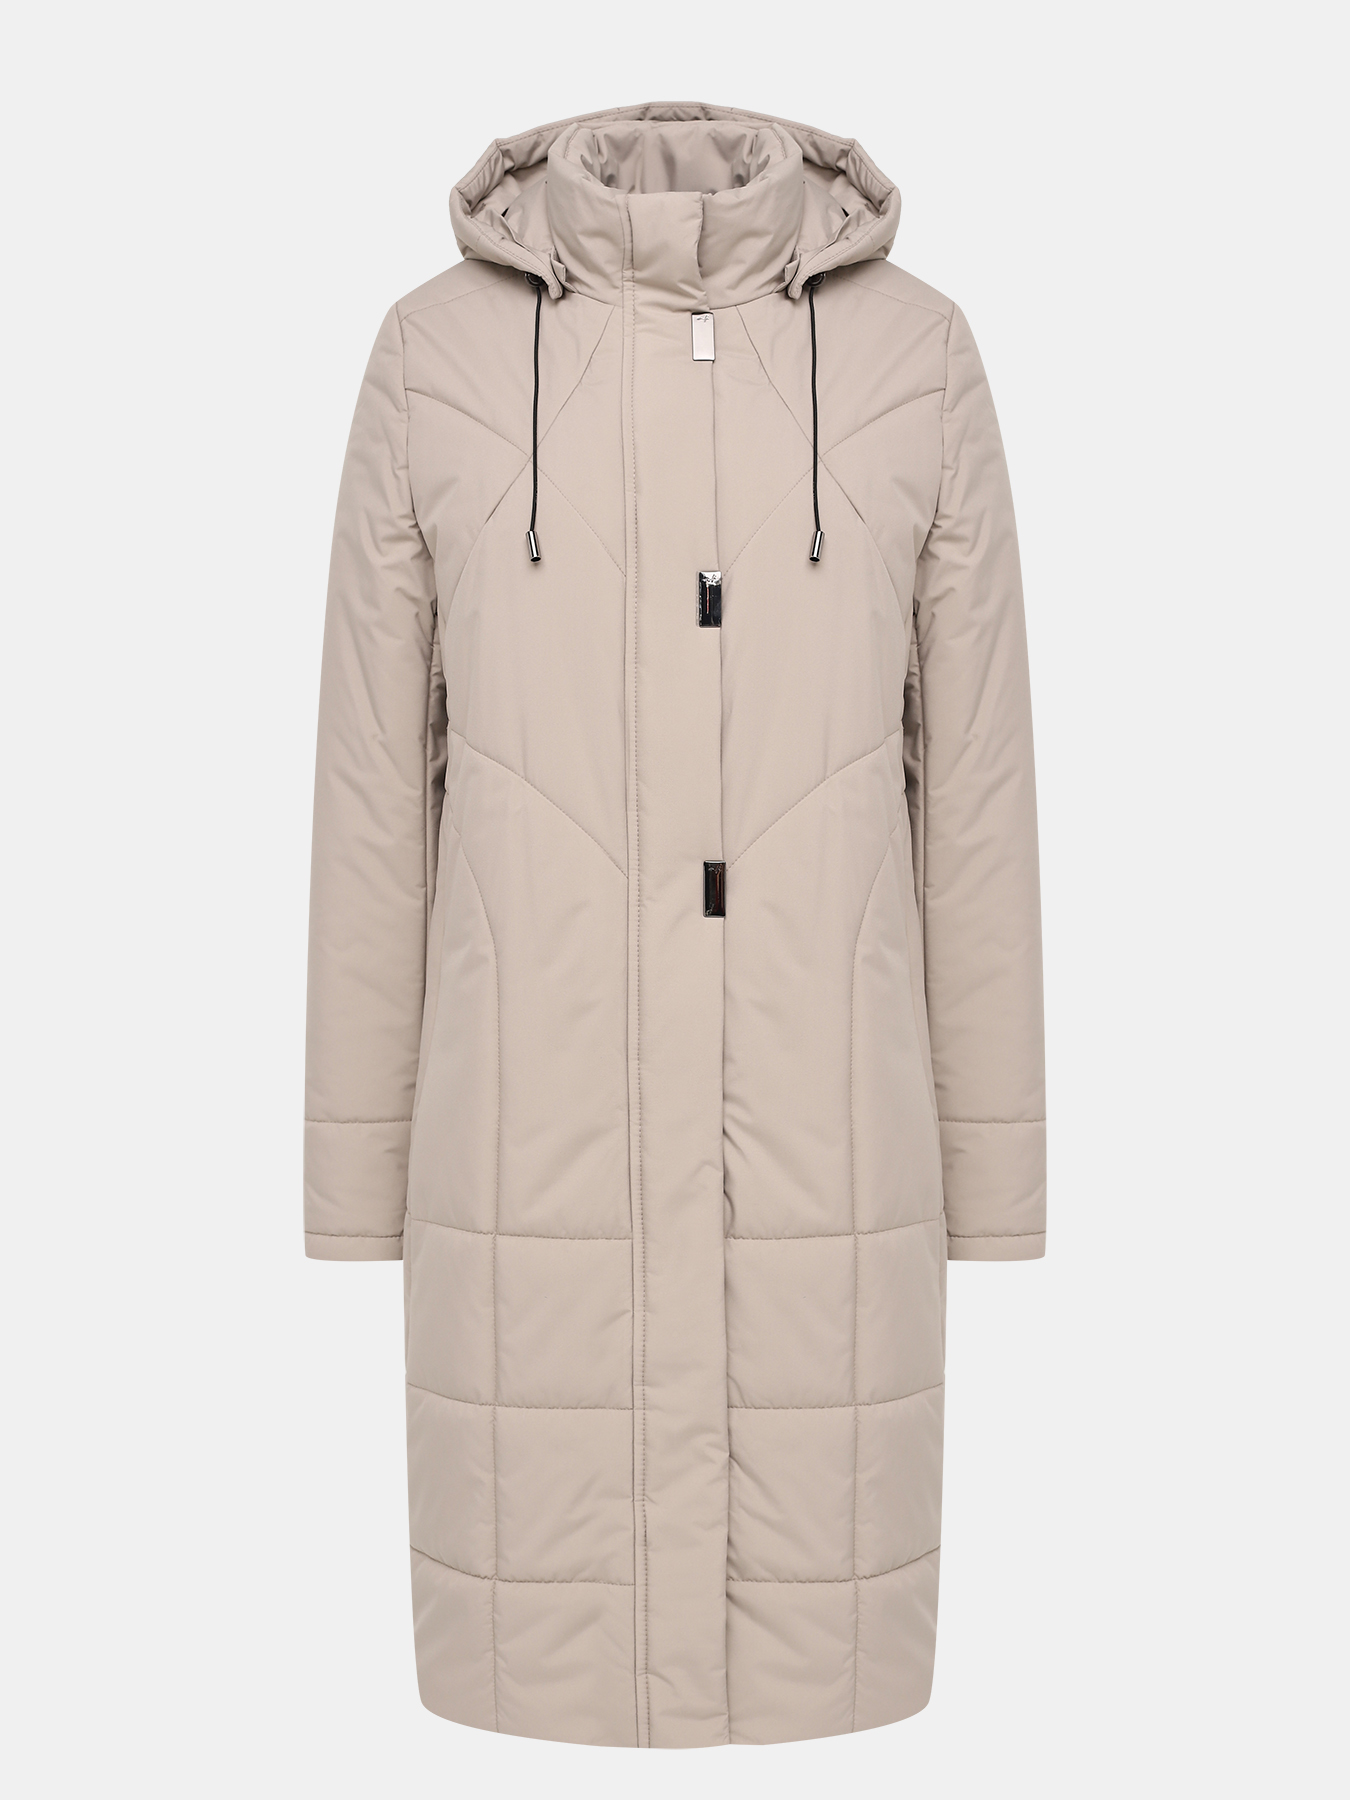 Пальто зимнее Maritta 433644-020, цвет бежевый, размер 44